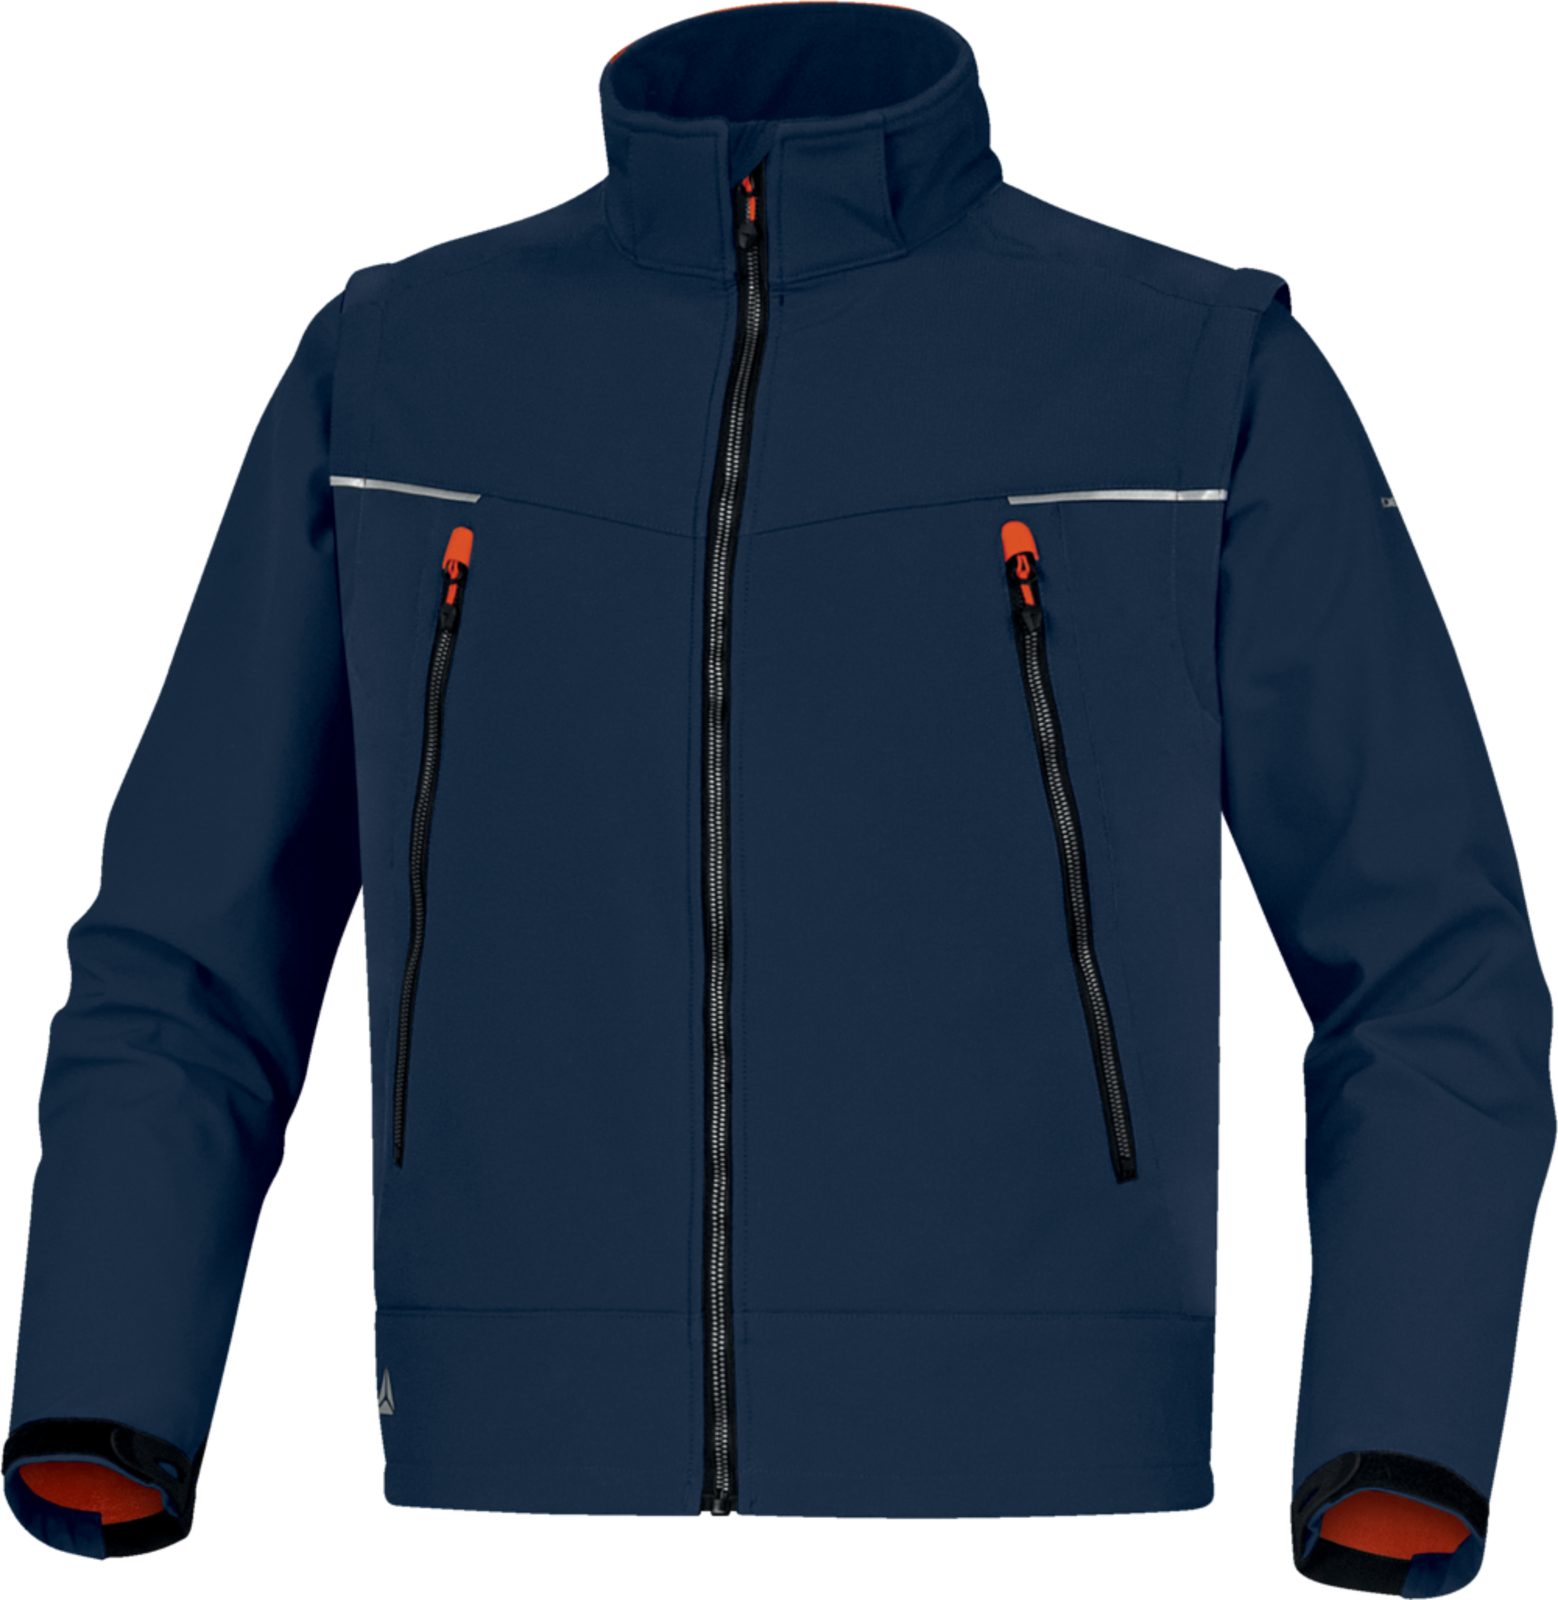 Softshellová bunda Delta Plus Orsa 2v1 - veľkosť: XL, farba: námornícka modrá/oranžová